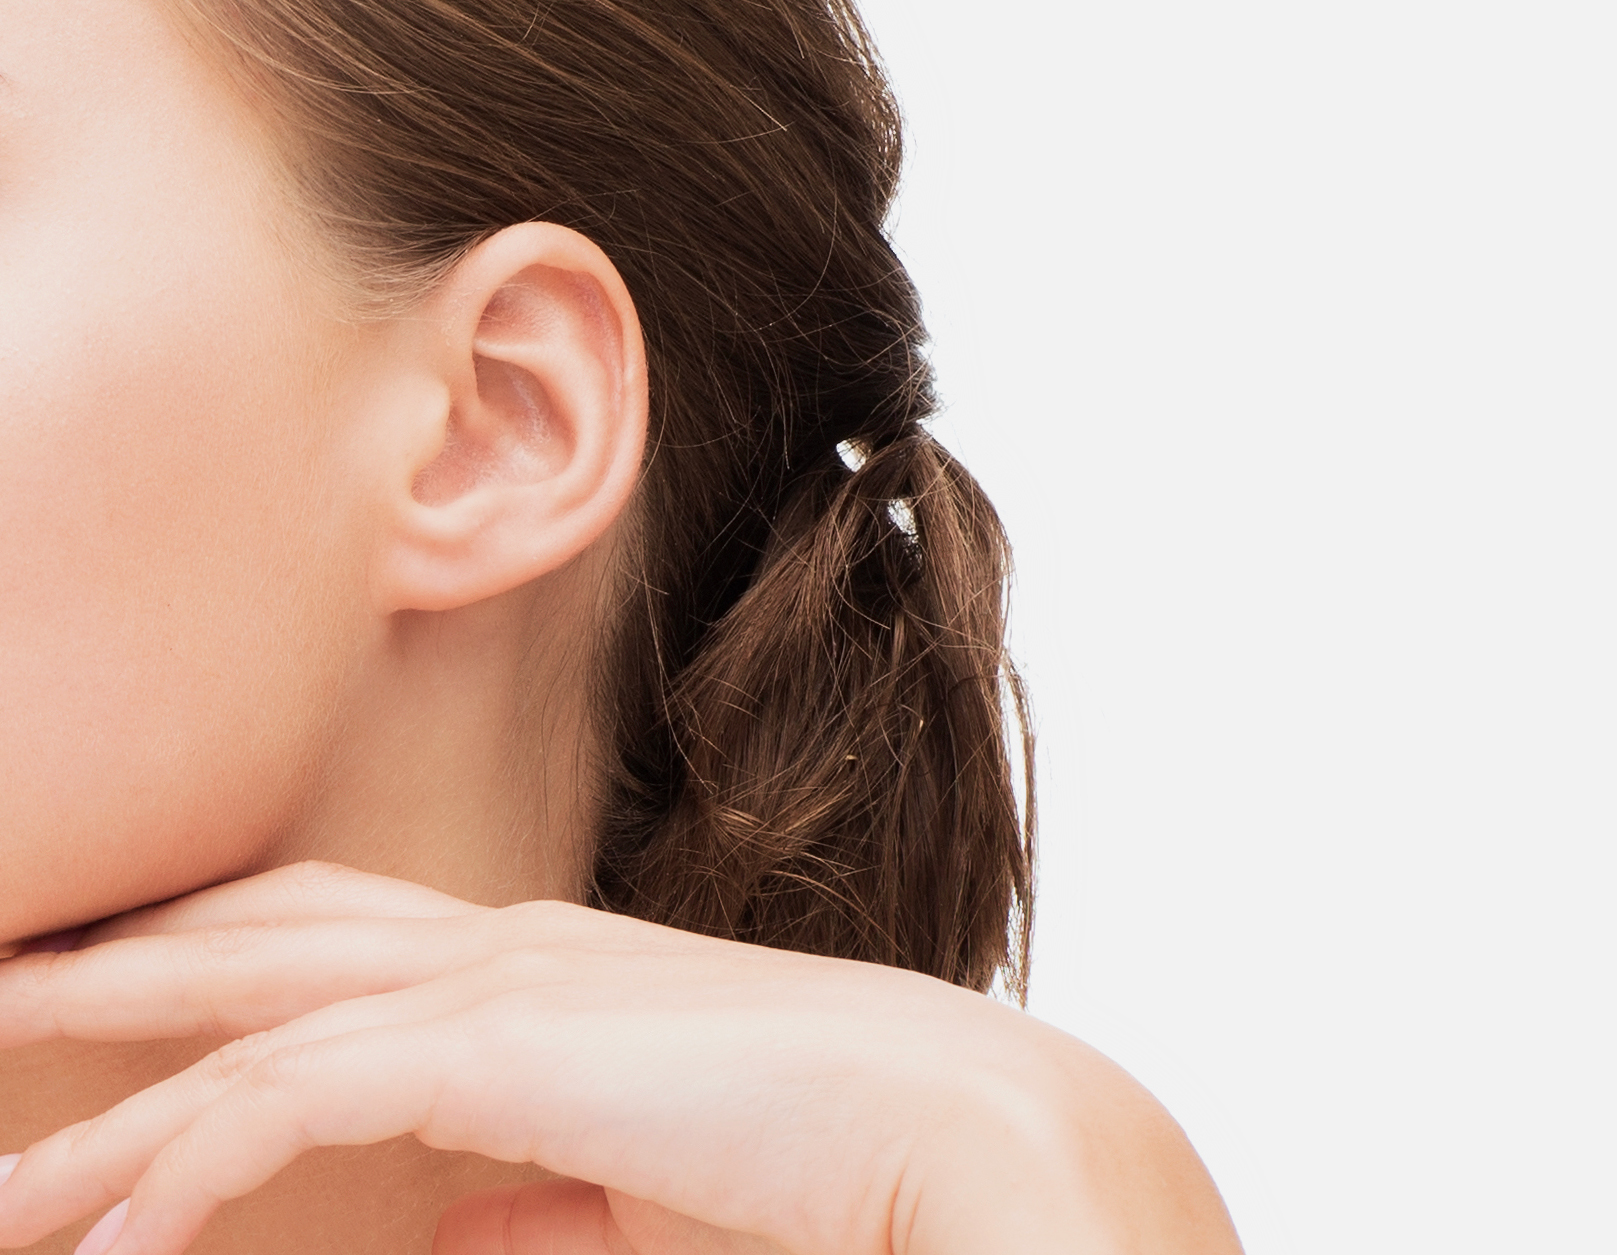 Cosmetic Ear Procedures